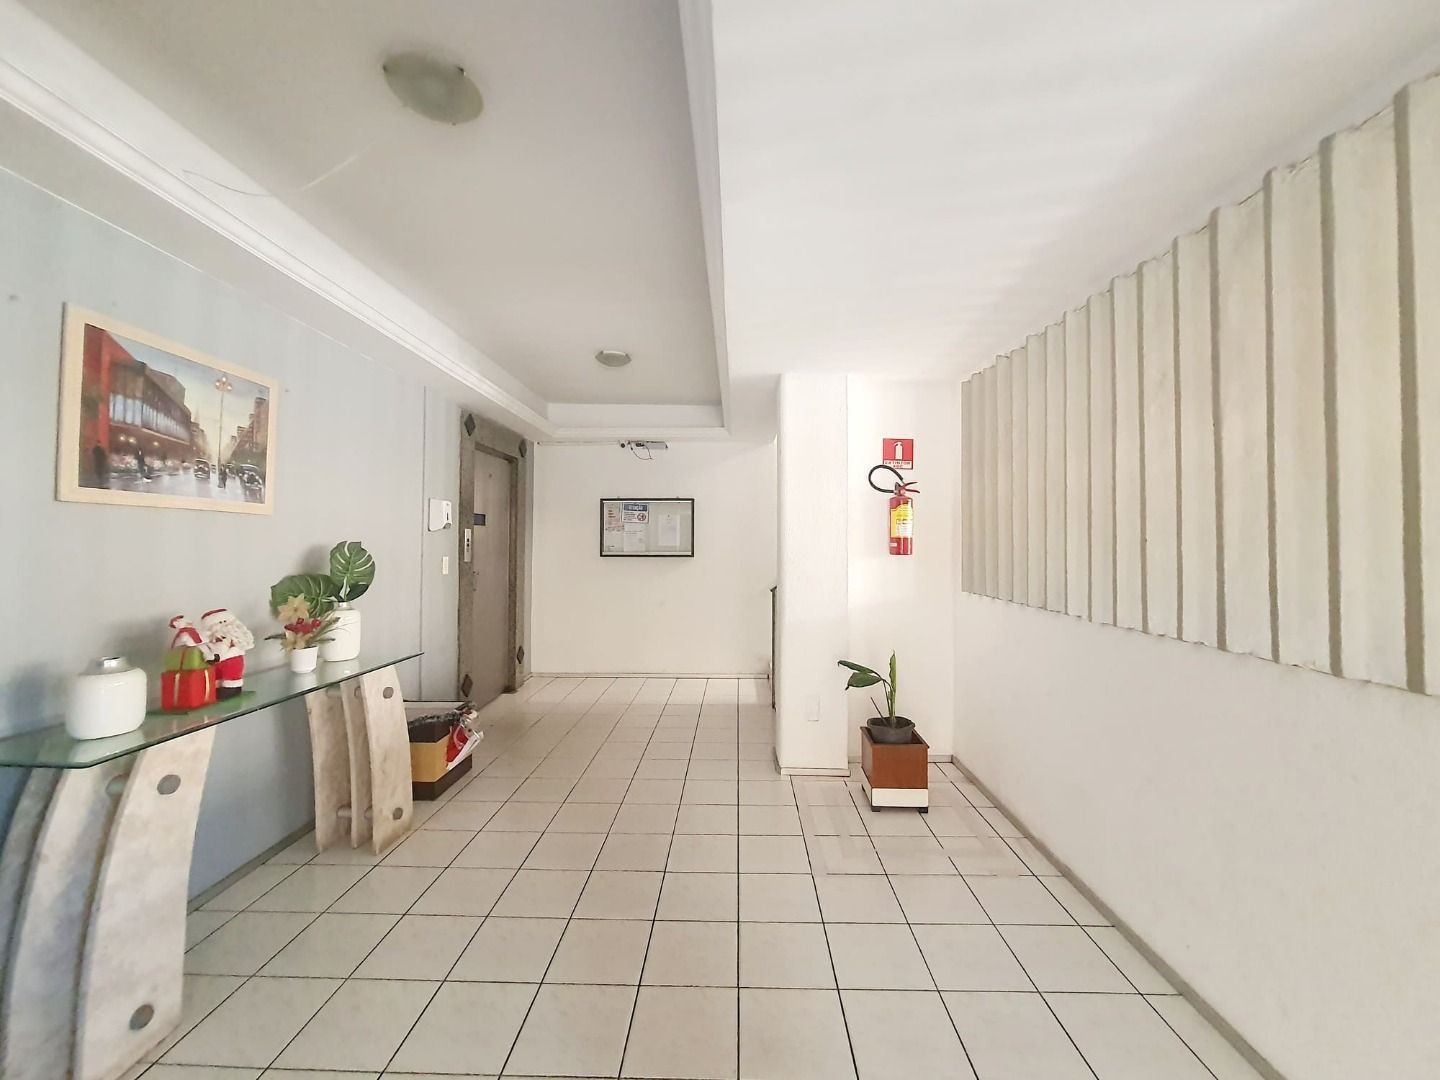 Apartamento, 2 quartos, 80 m² - Foto 2